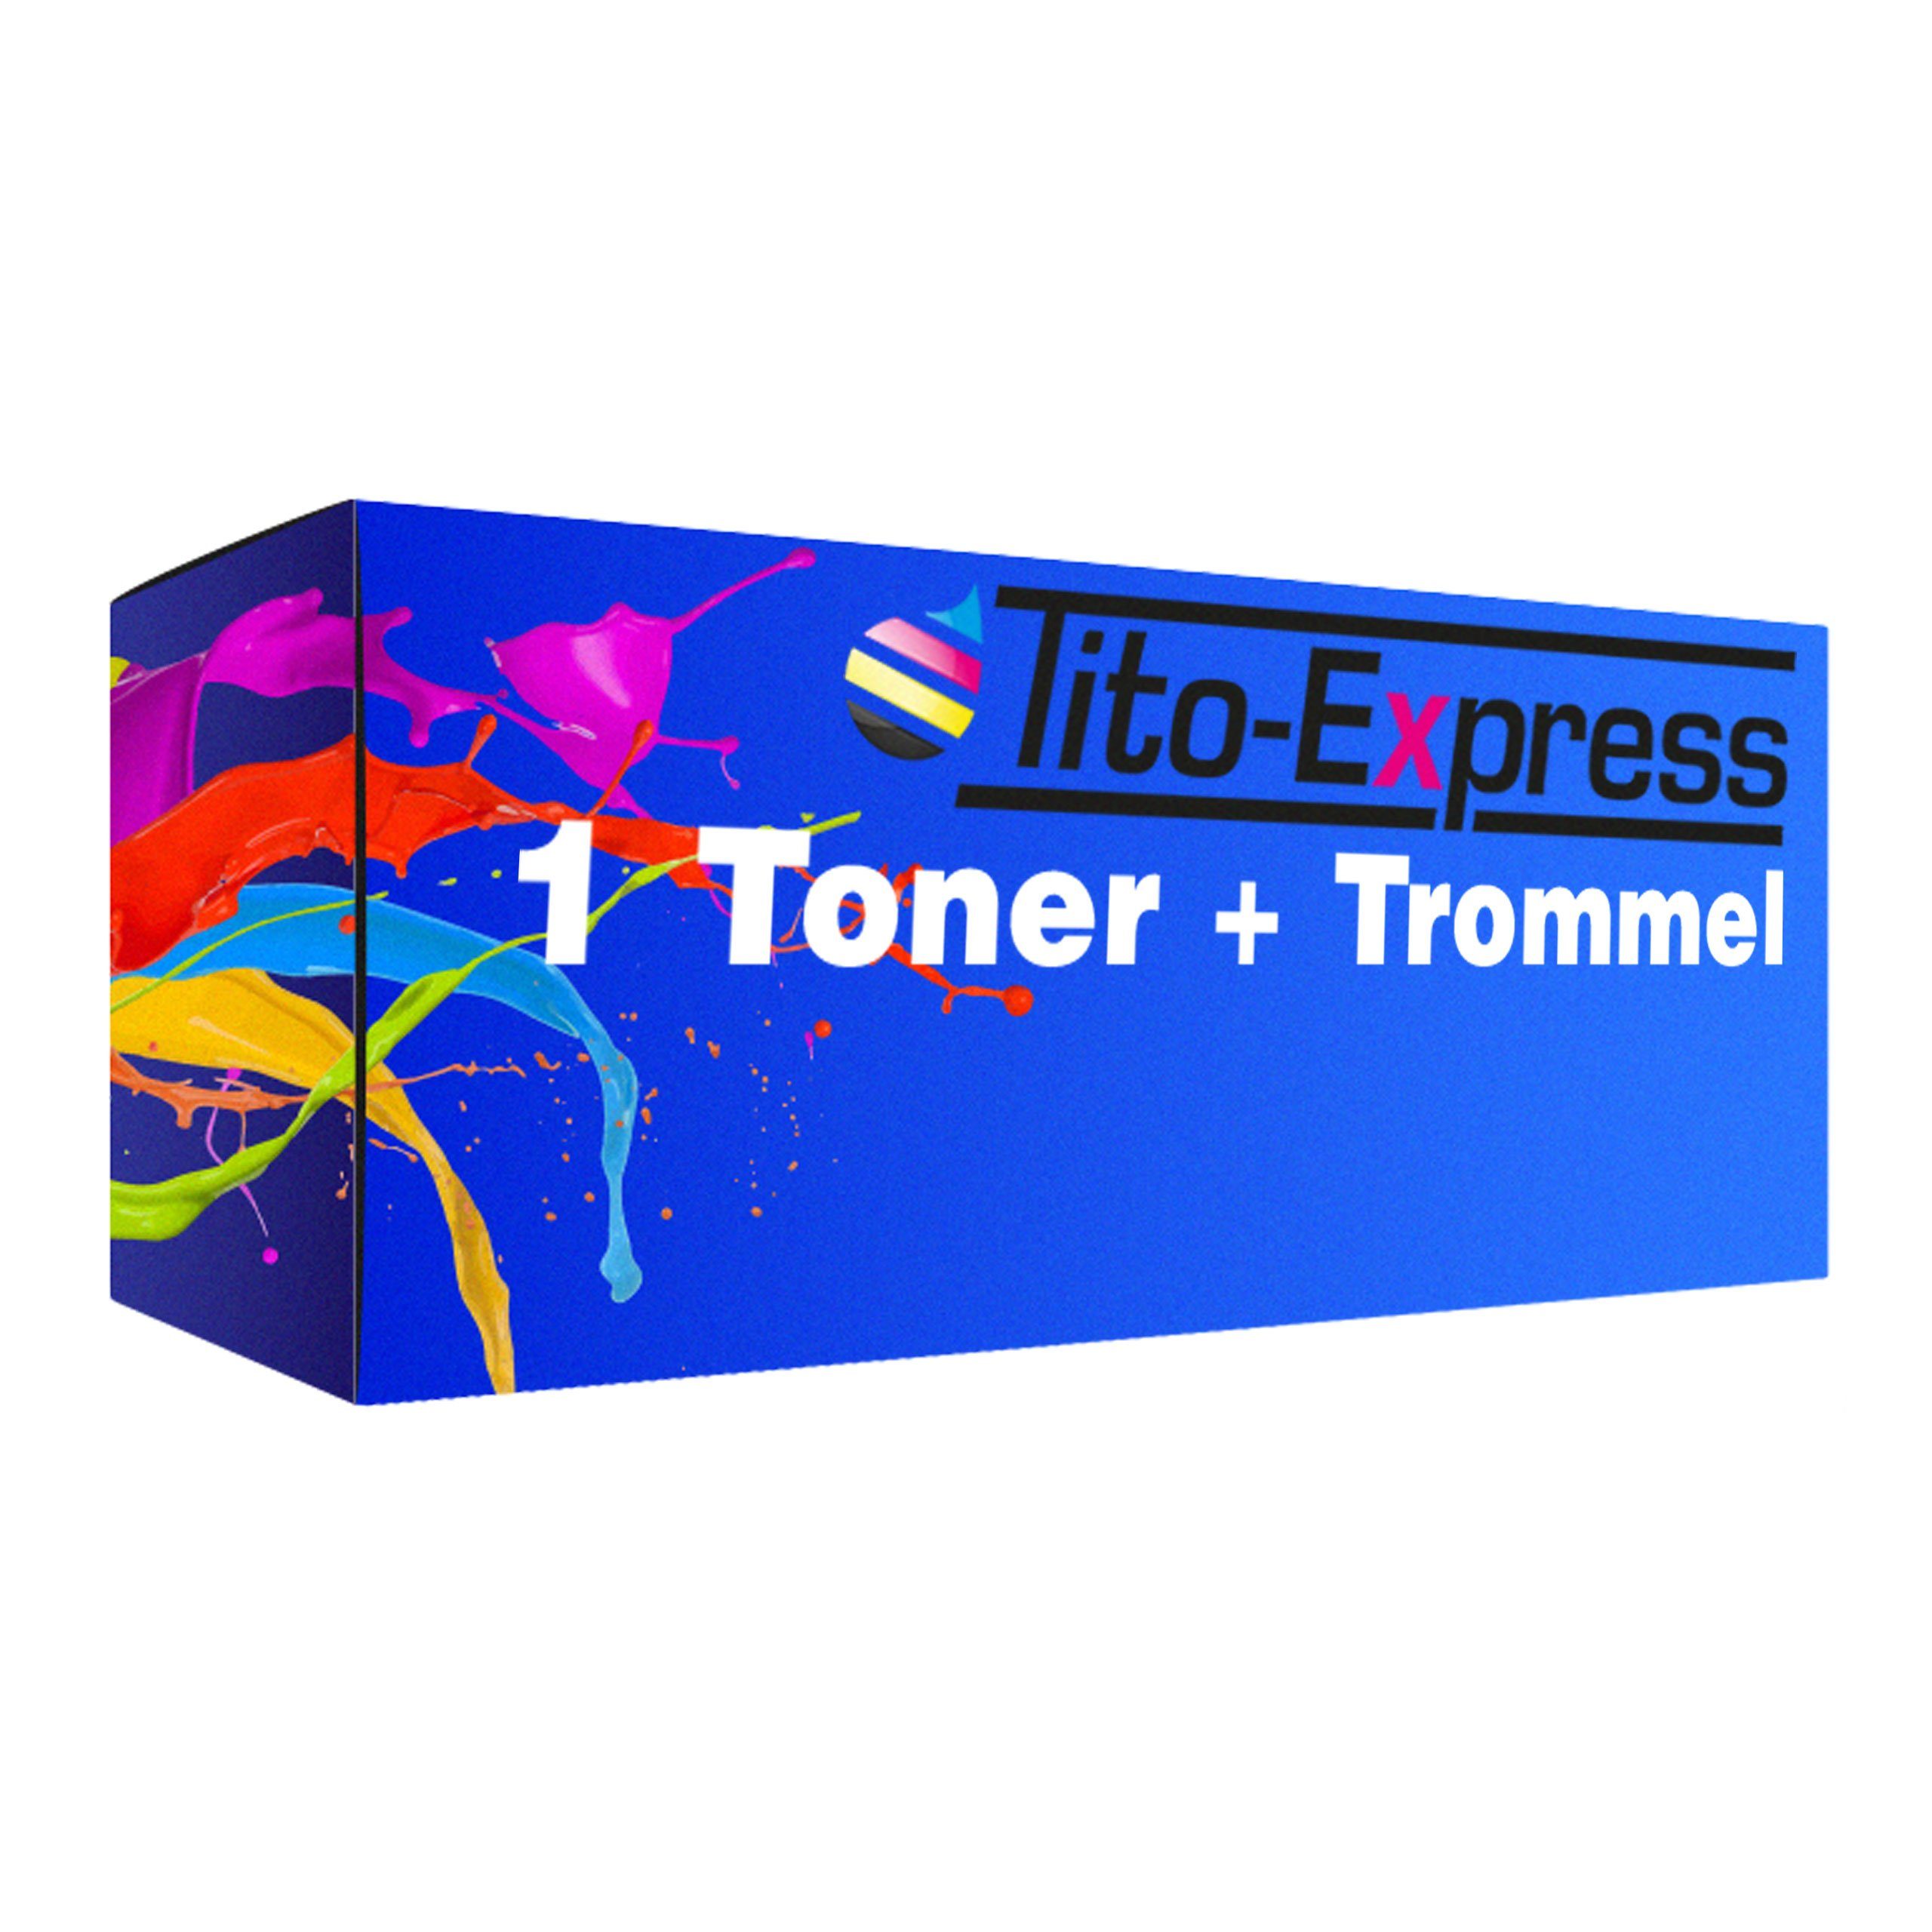 Tito-Express Tonerpatrone 2er Set ersetzt Brother TN-3060 & DR-3000, (Vorteilspack, 1x Black, 1x Trommel), für DCP-8040 DCP-8045 HL-5140 MFC-8220 MFC-8240 MFC-8440DN MFC-8840